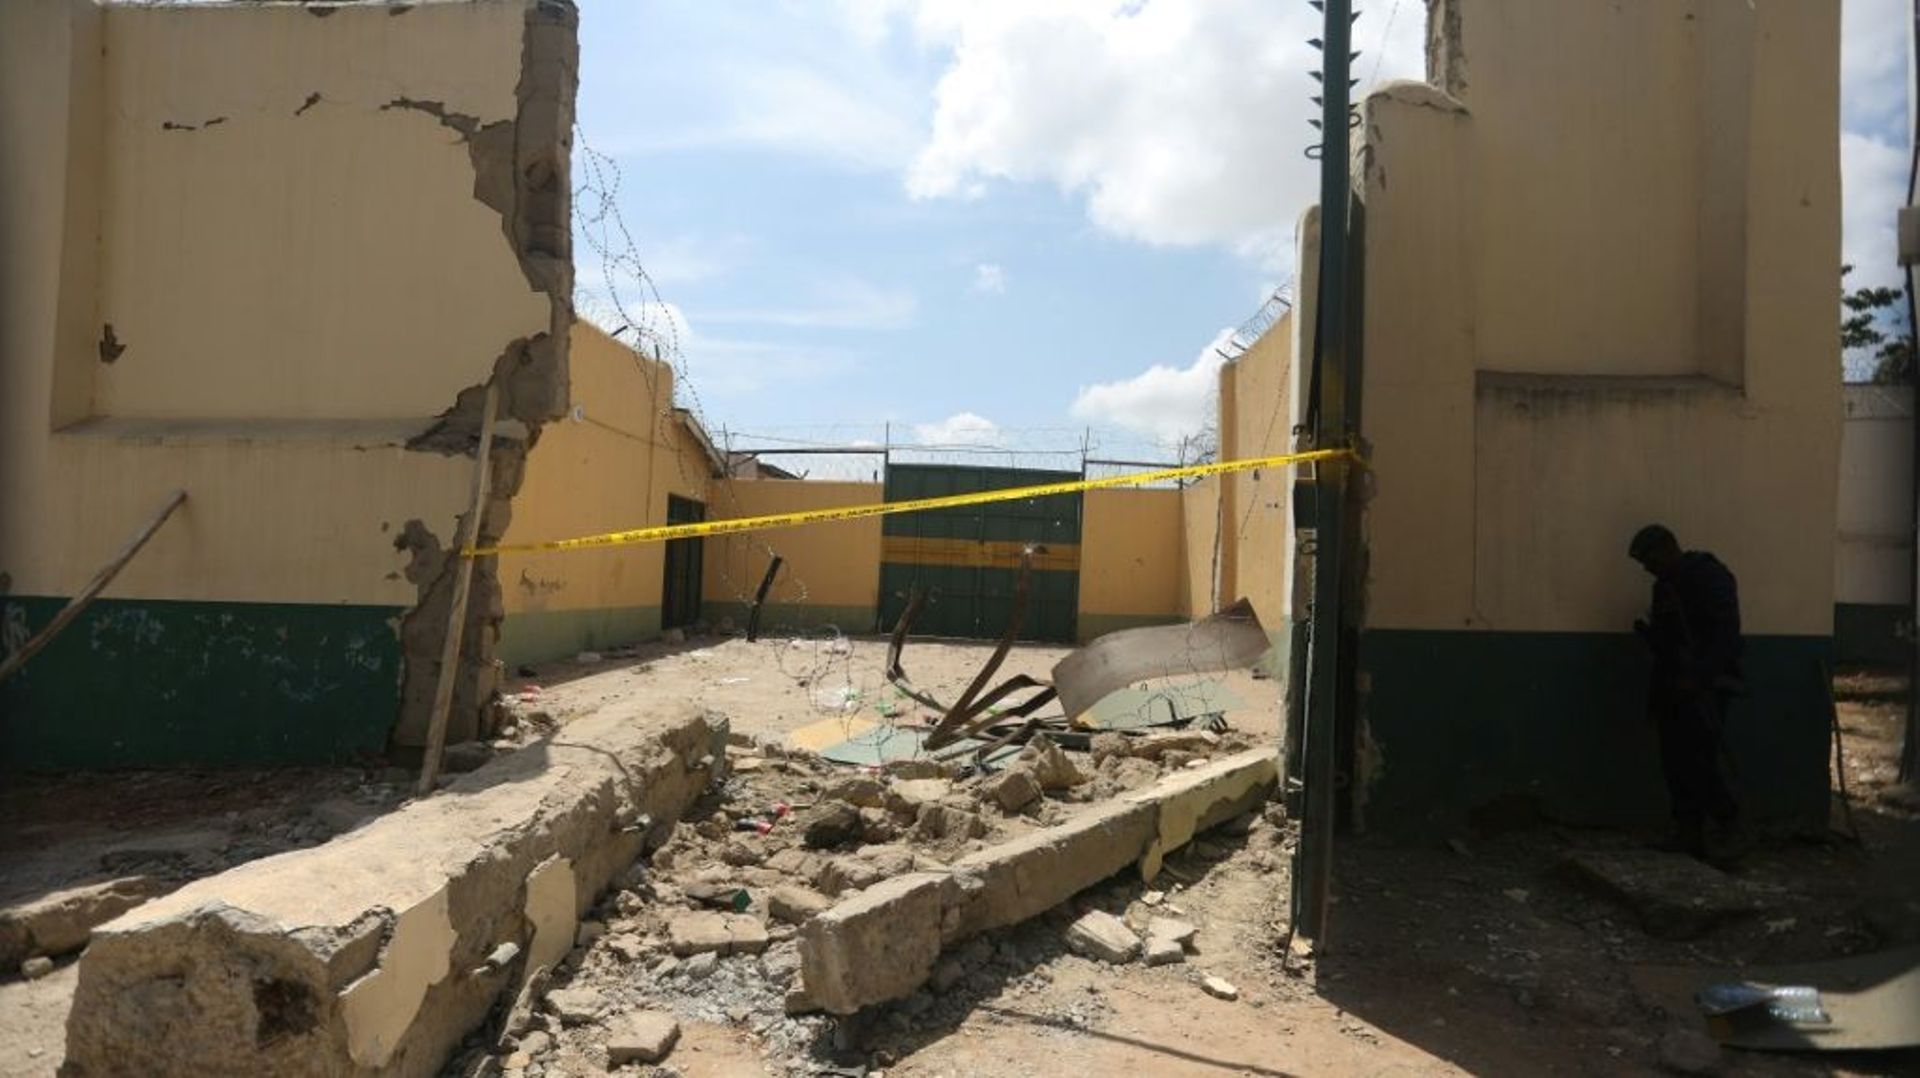 Vue générale du Centre pénitentiaire de moyenne sécurité de Kuje, dans la banlieue d’Abuja, après avoir subi une attaque présumée de Boko Haram, le 6 juillet 2022.